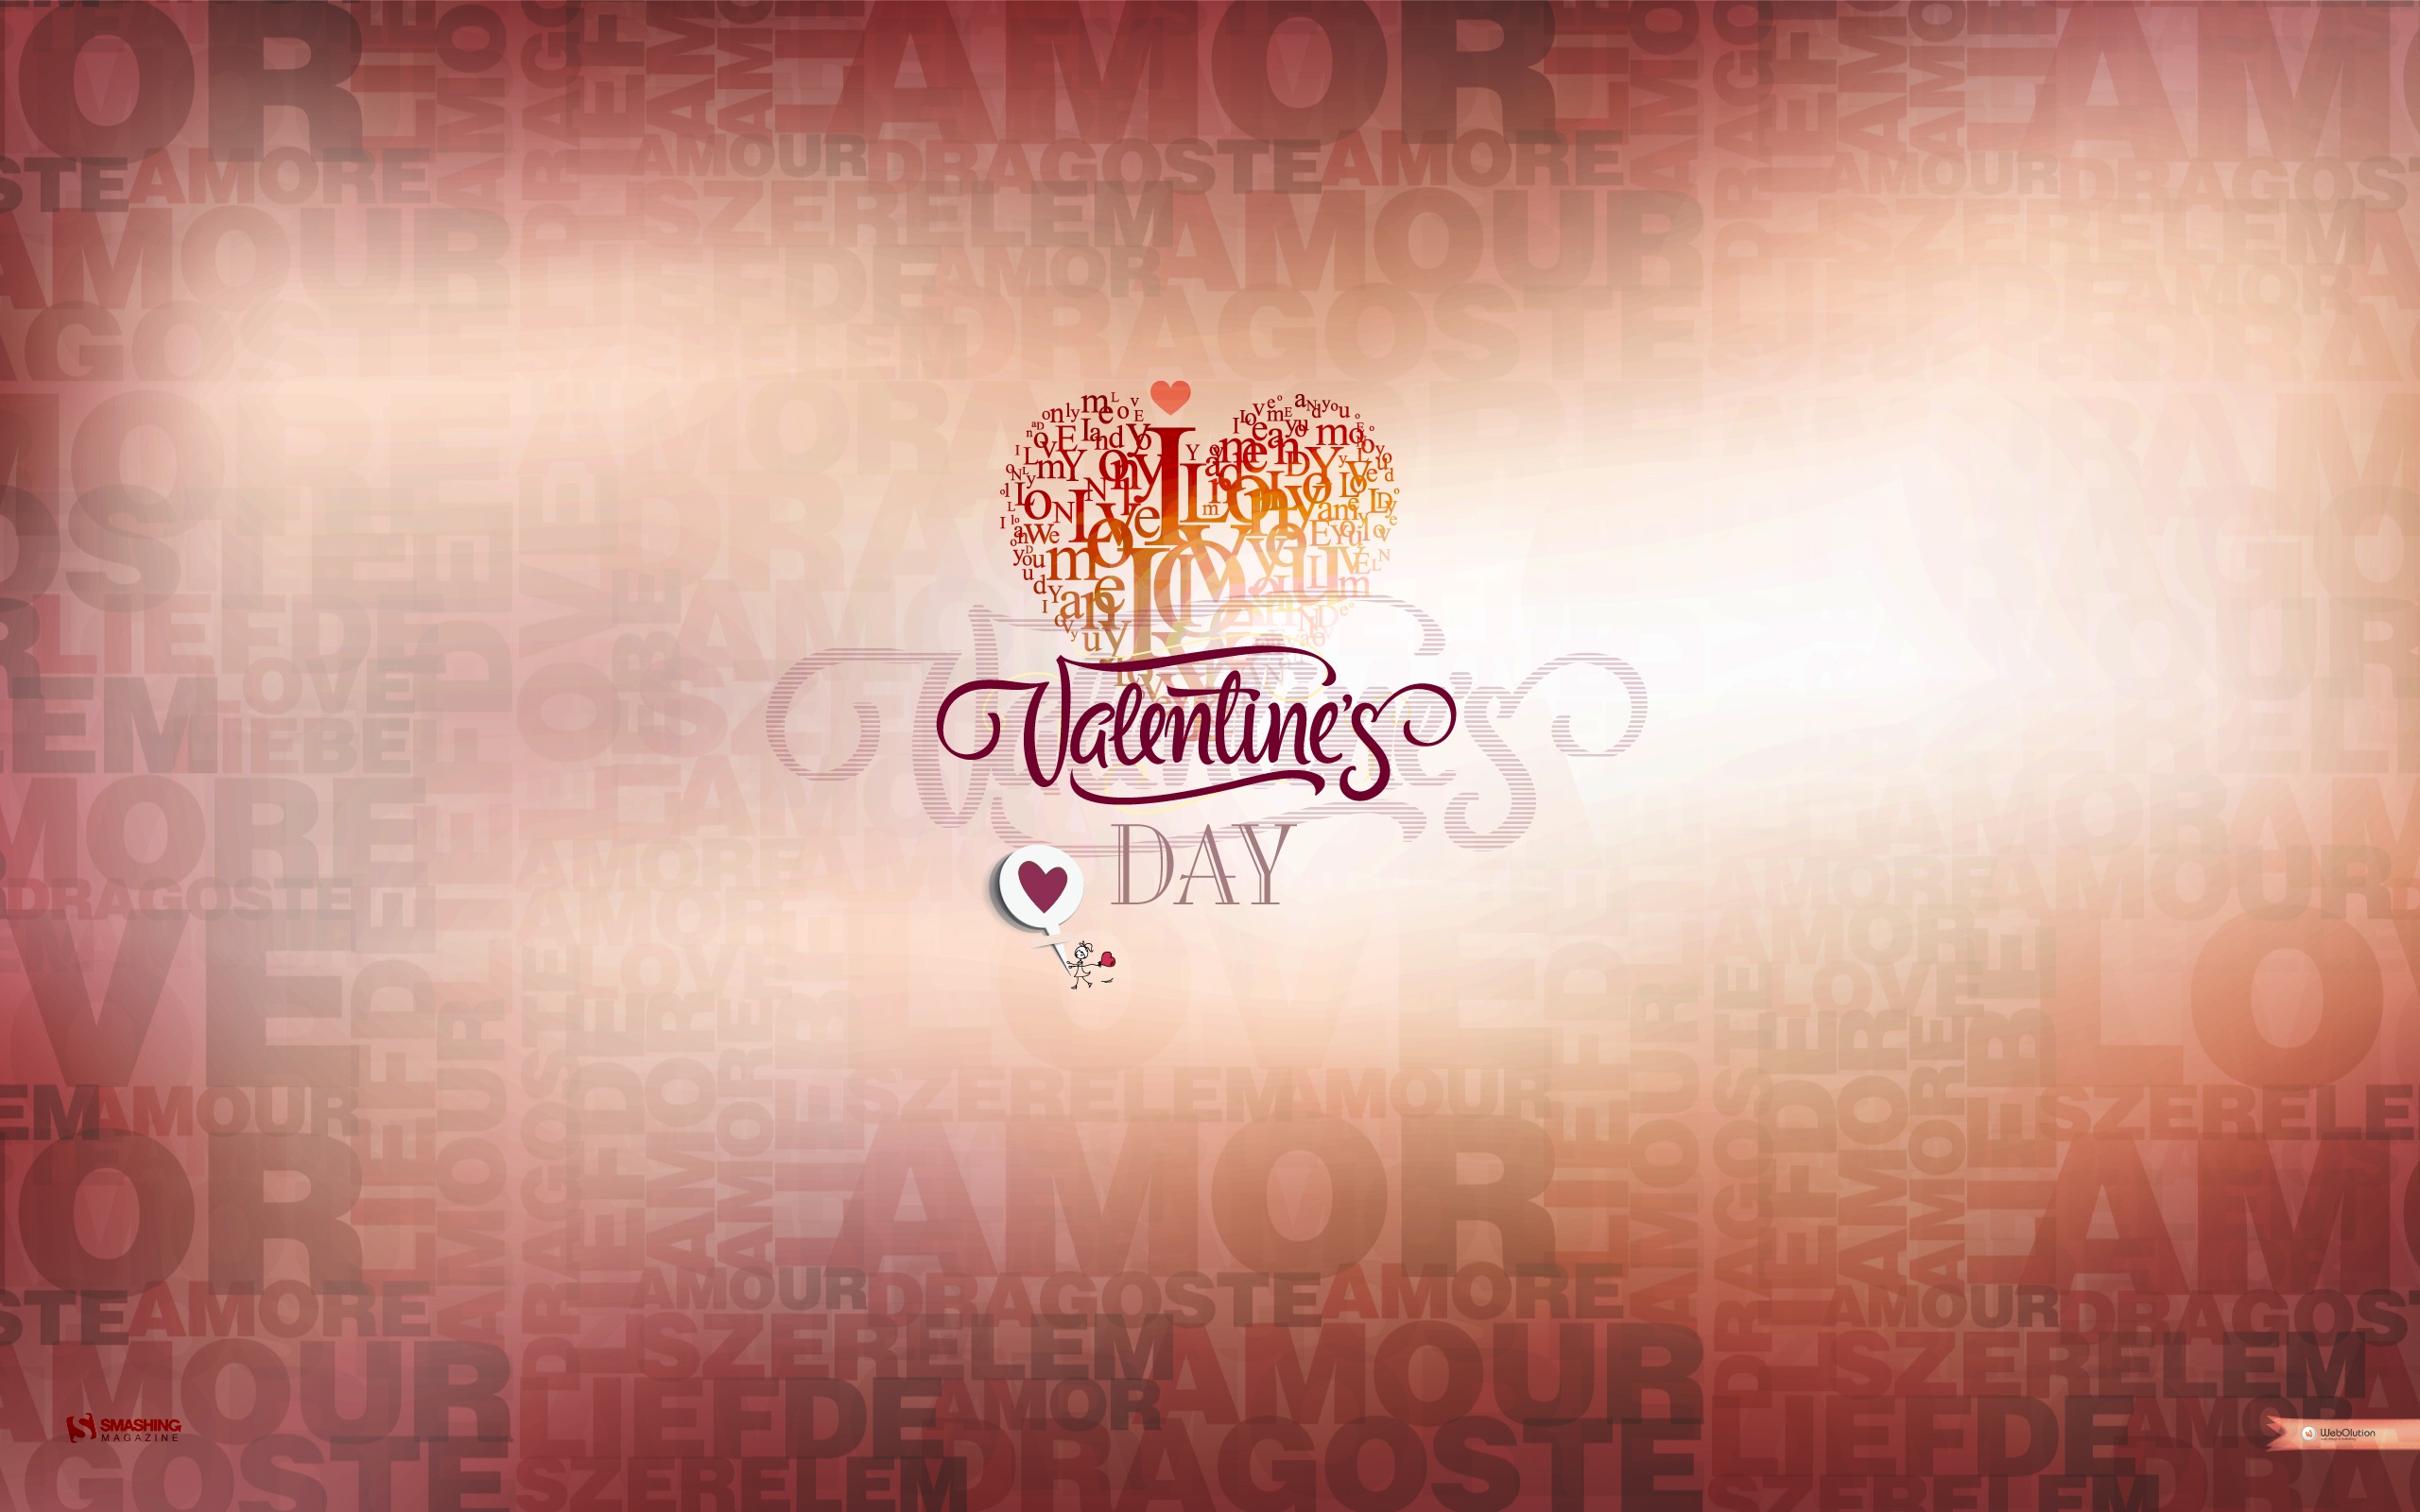 Feb 14 Valentines Day9186018610 - Feb 14 Valentines Day - Valentines, Fractal